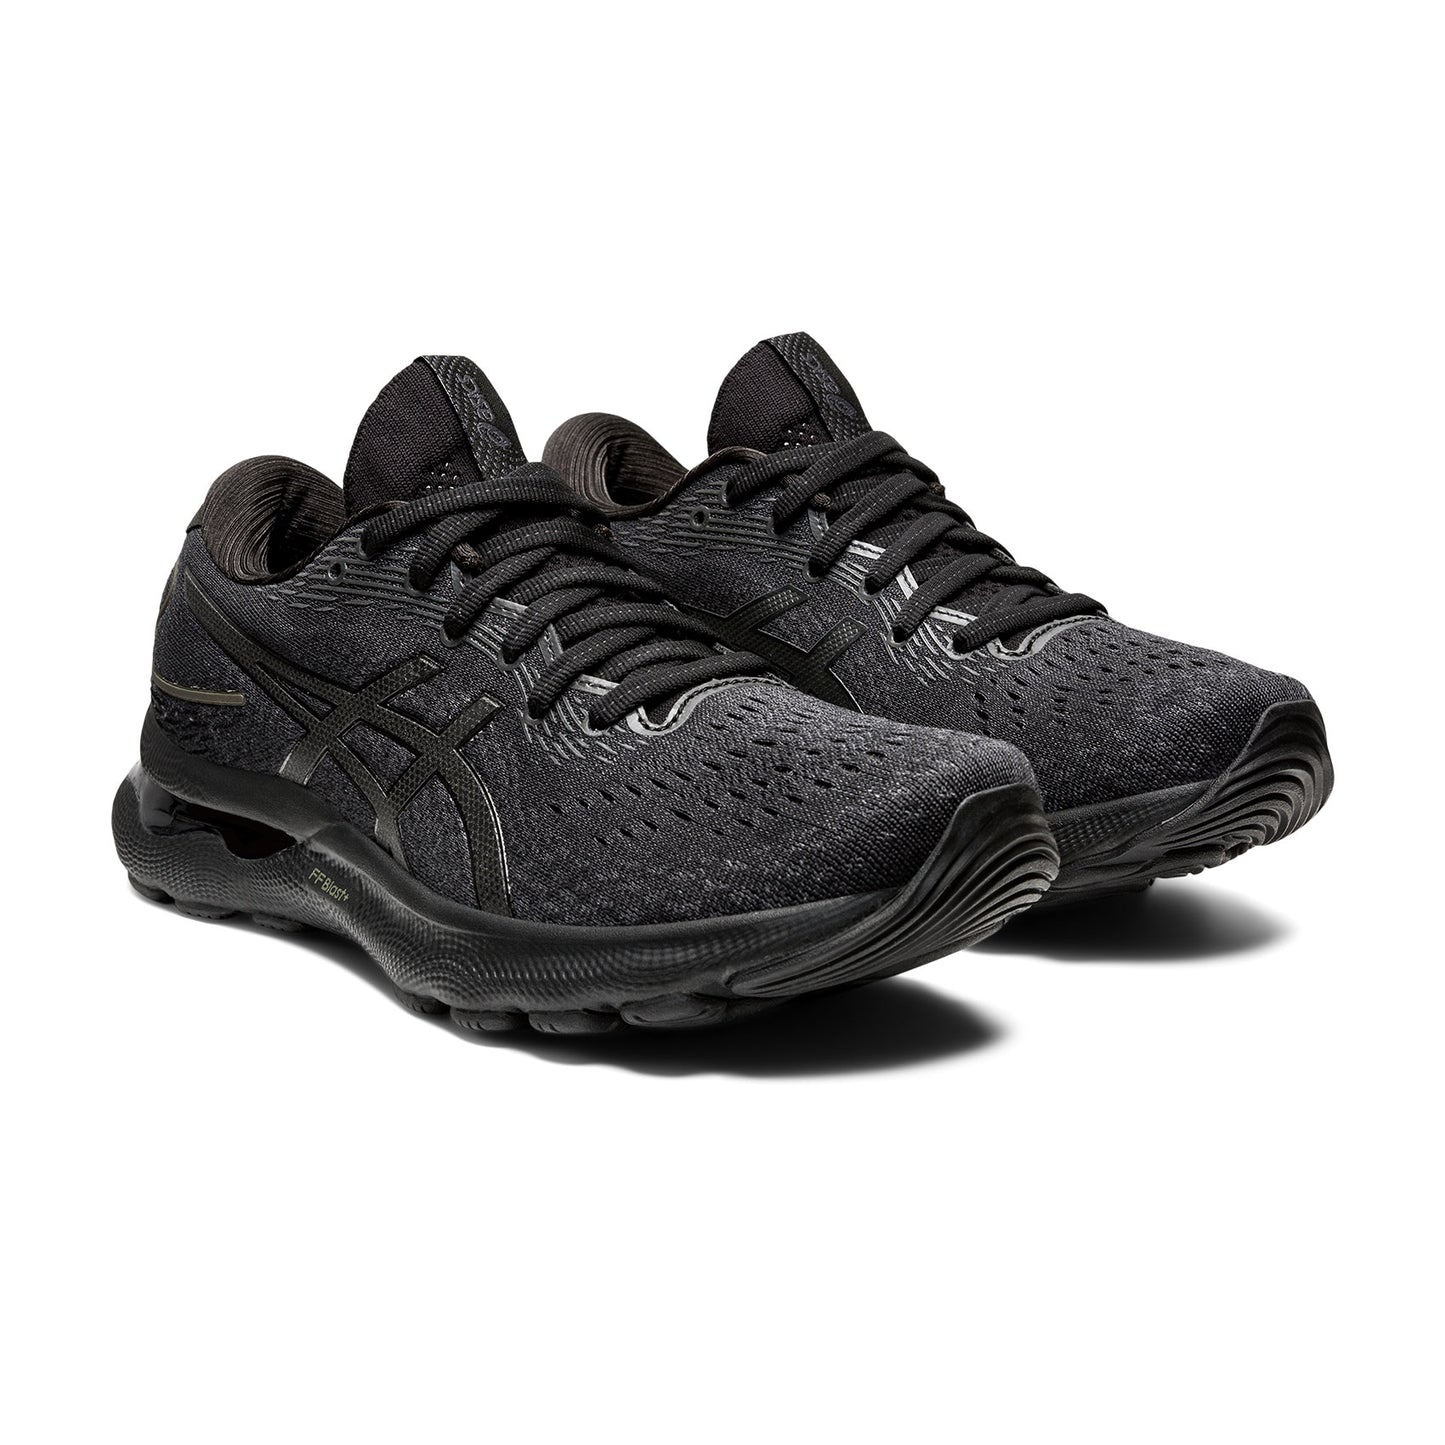 Women's Gel Nimbus 24 Running Shoe - Black/Black— Regular (B)